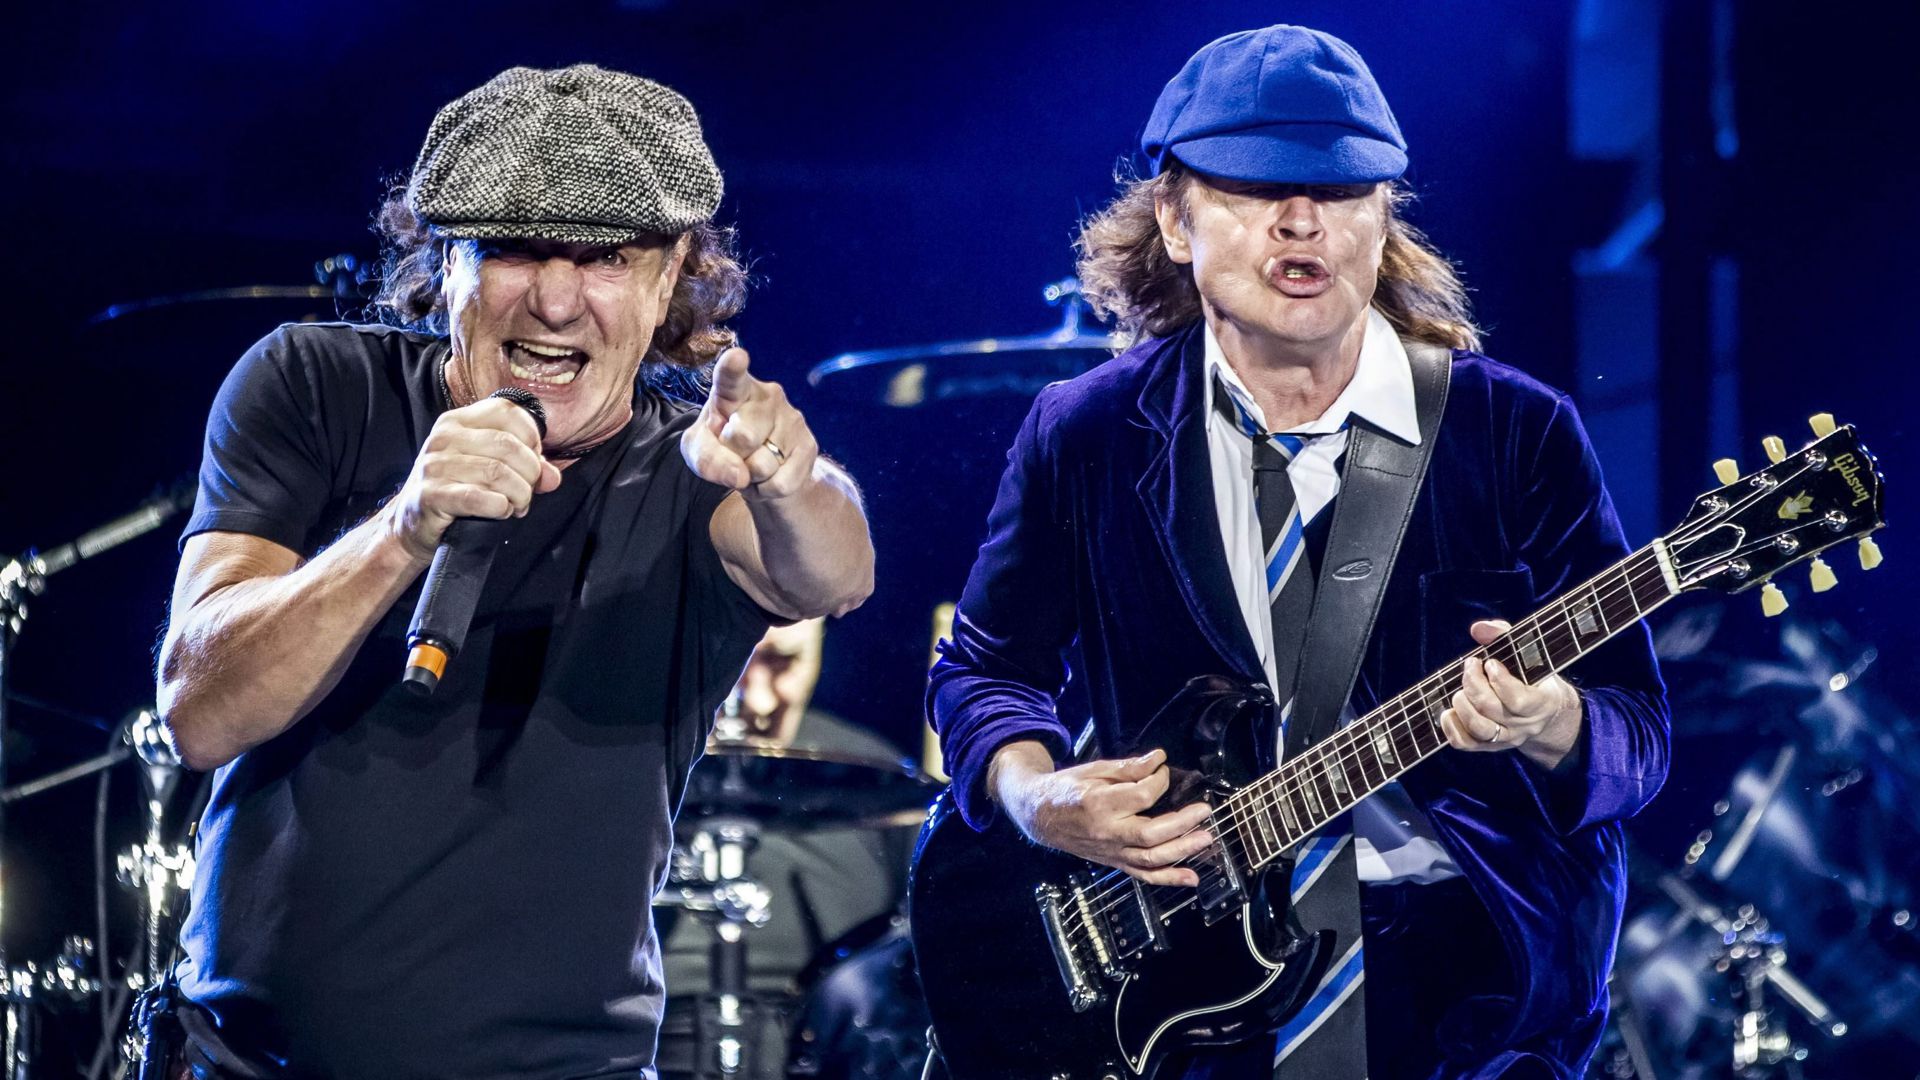 Sänger Brian Johnson und Gitarrist Angus Young von der australischen Band AC/DC bei einem Auftritt in Madrid im Mai 2015.